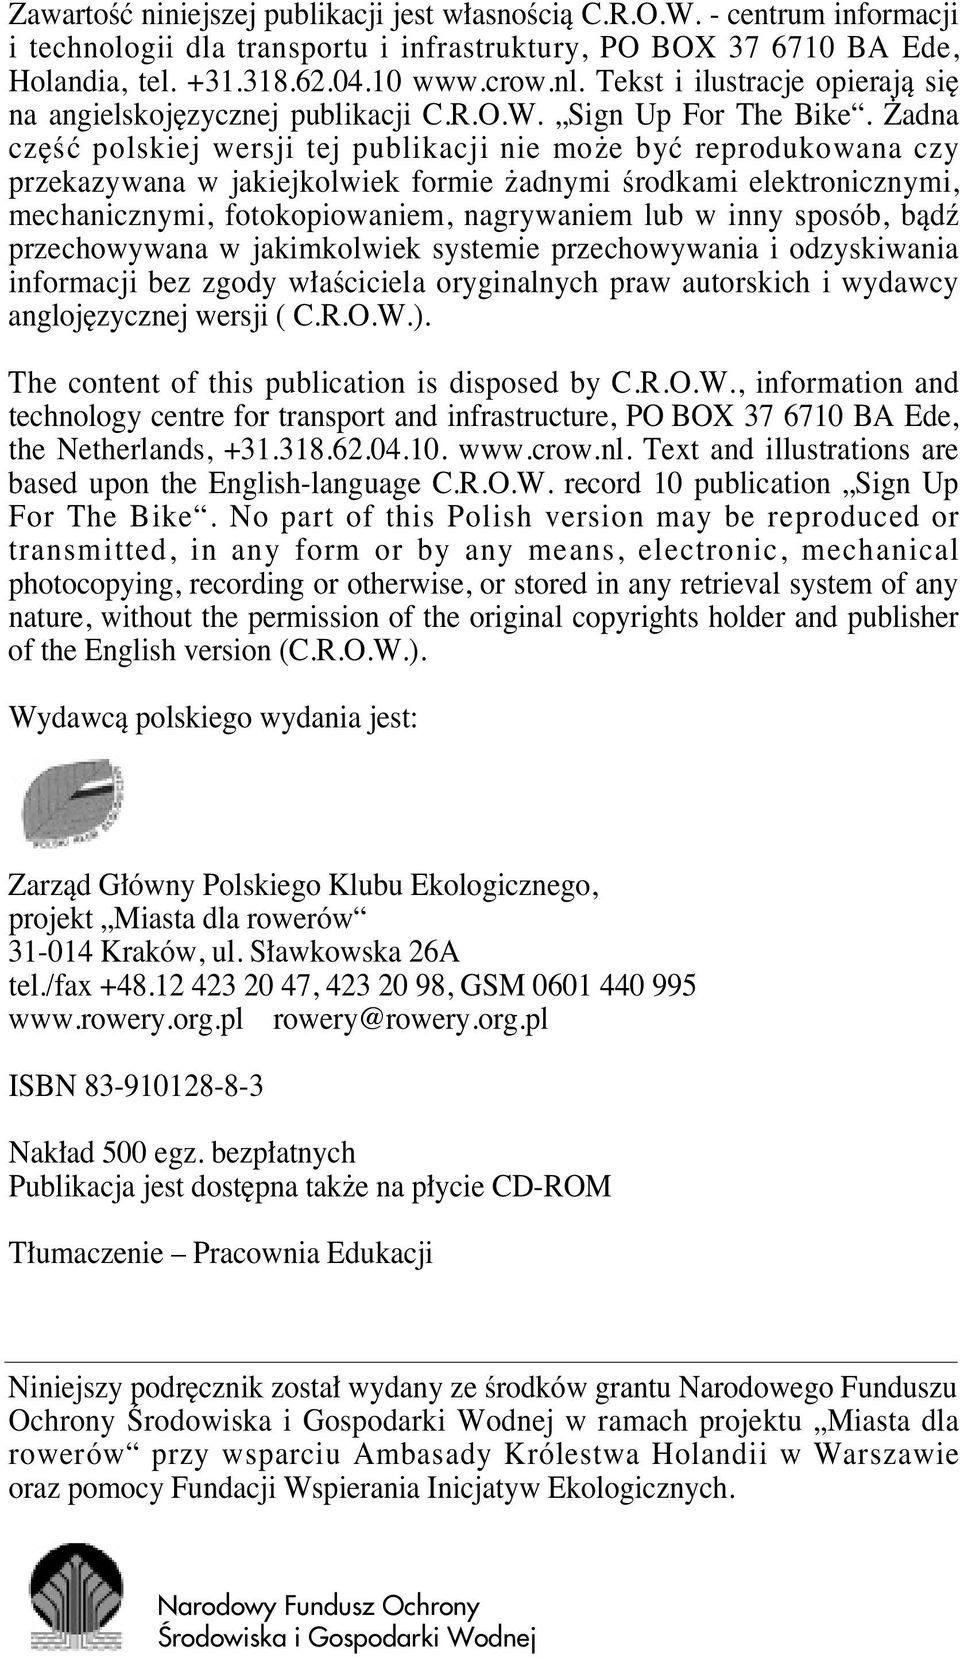 adna cz Êç polskiej wersji tej publikacji nie mo e byç reprodukowana czy przekazywana w jakiejkolwiek formie adnymi Êrodkami elektronicznymi, mechanicznymi, fotokopiowaniem, nagrywaniem lub w inny